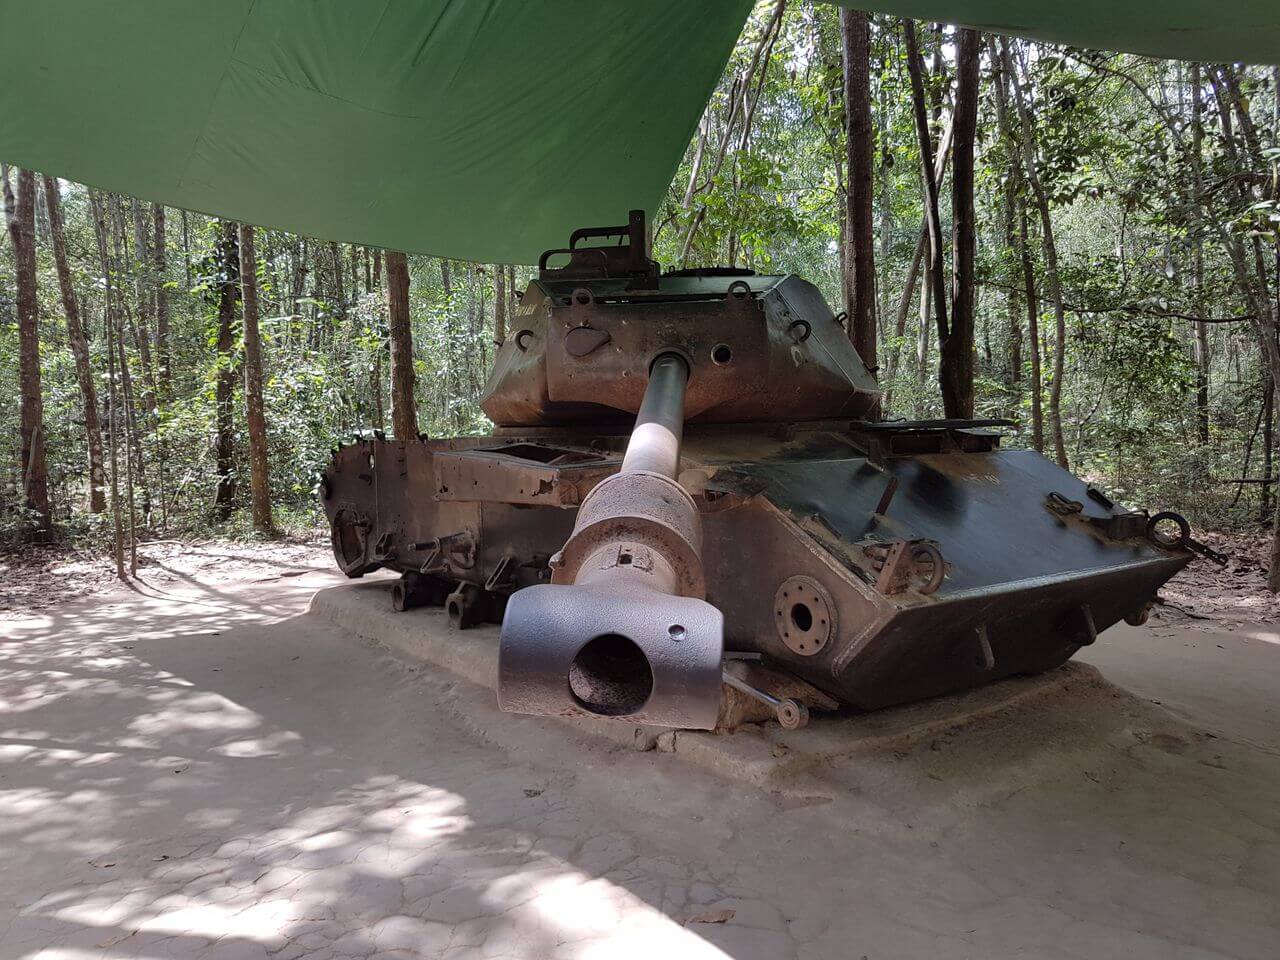 Tank from the Vietnam War